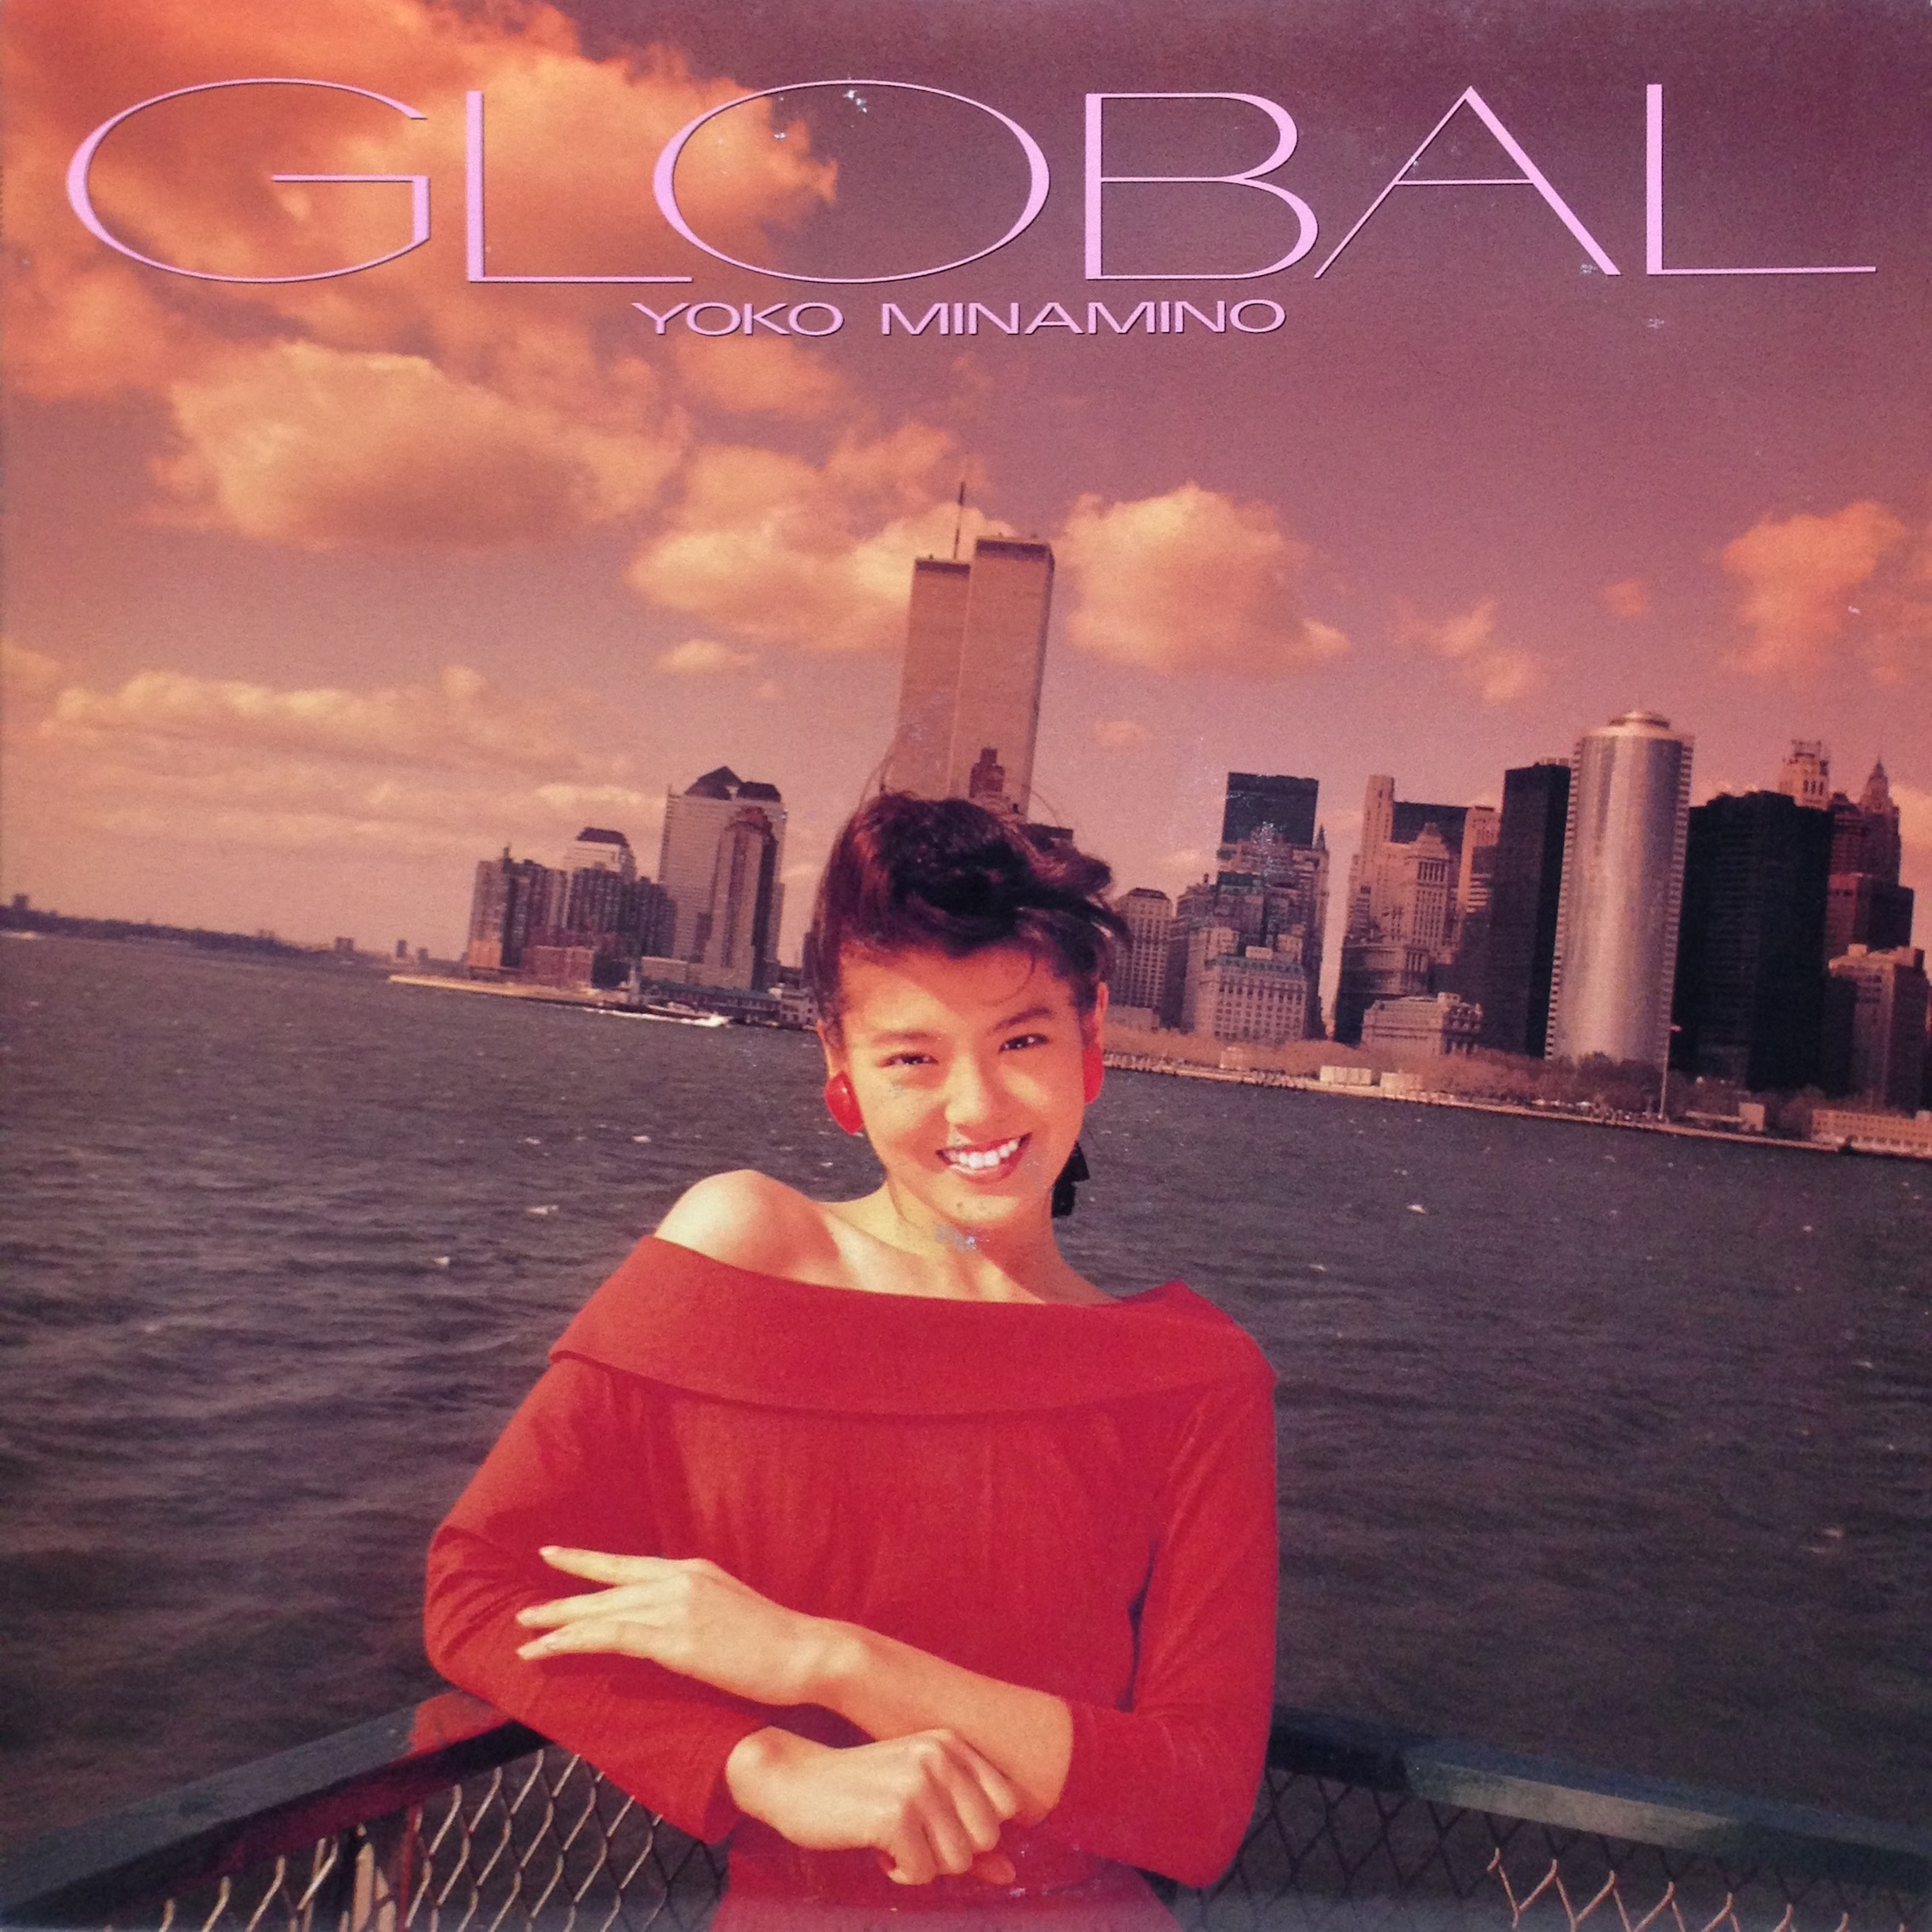 20160203.04.1 Yoko Minamino - Global (1988) cover.jpg